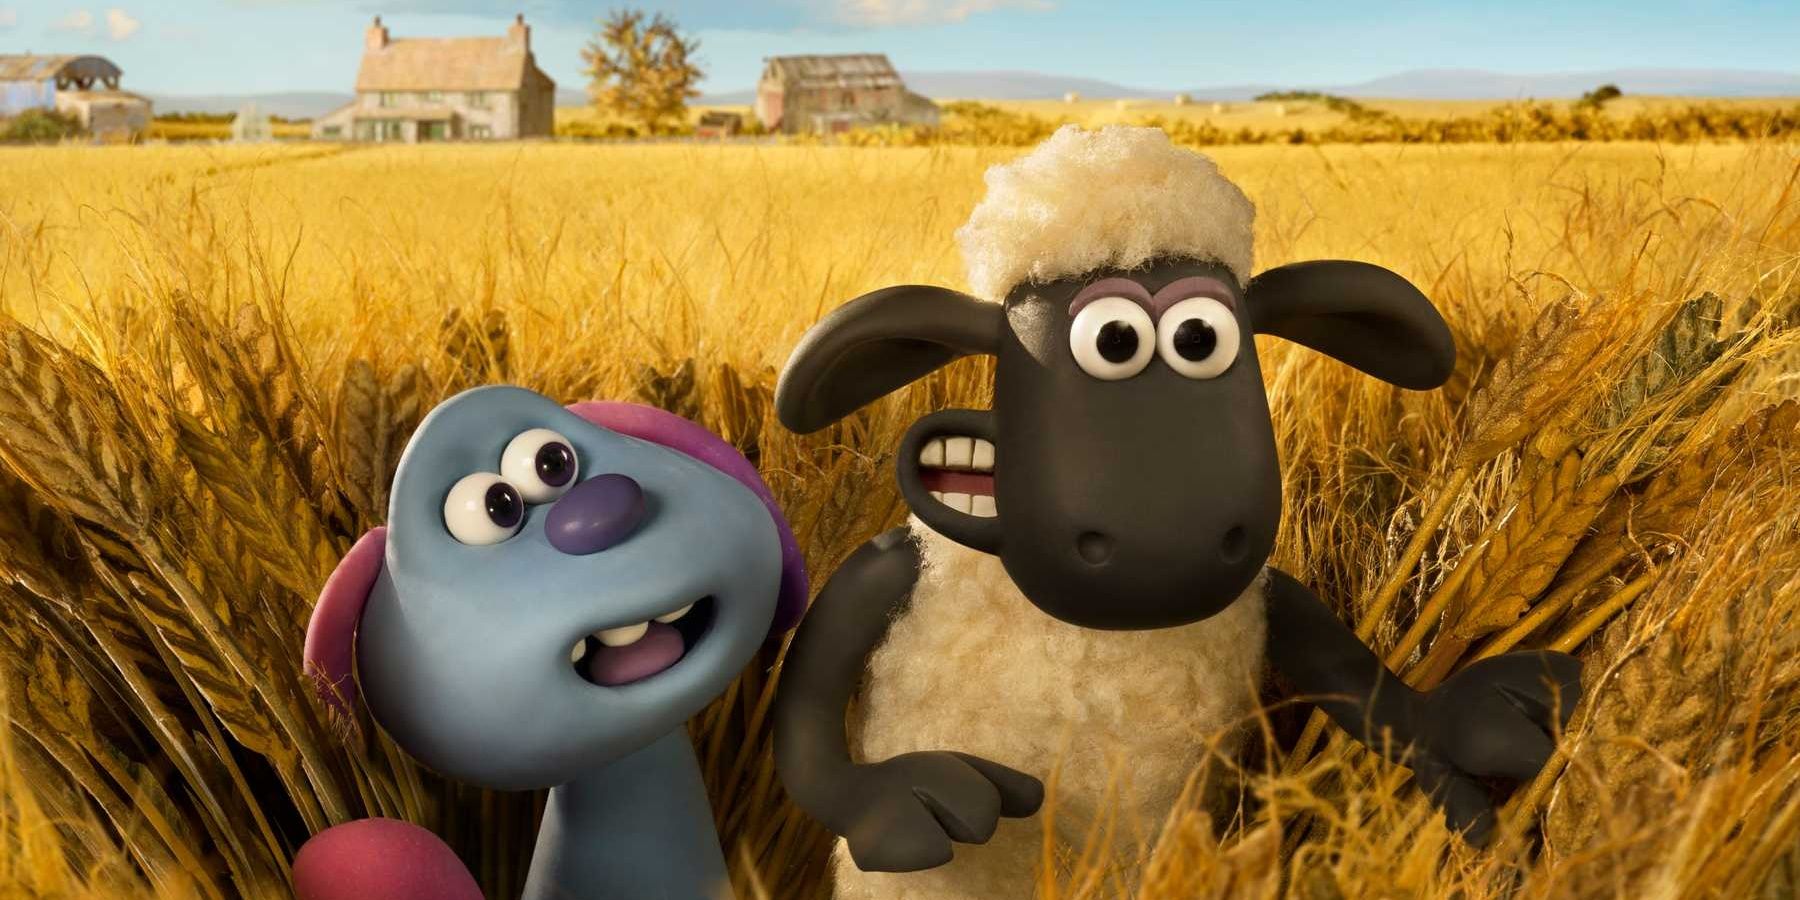 Shaun The Sheep guides his new alien friend through a corn field.